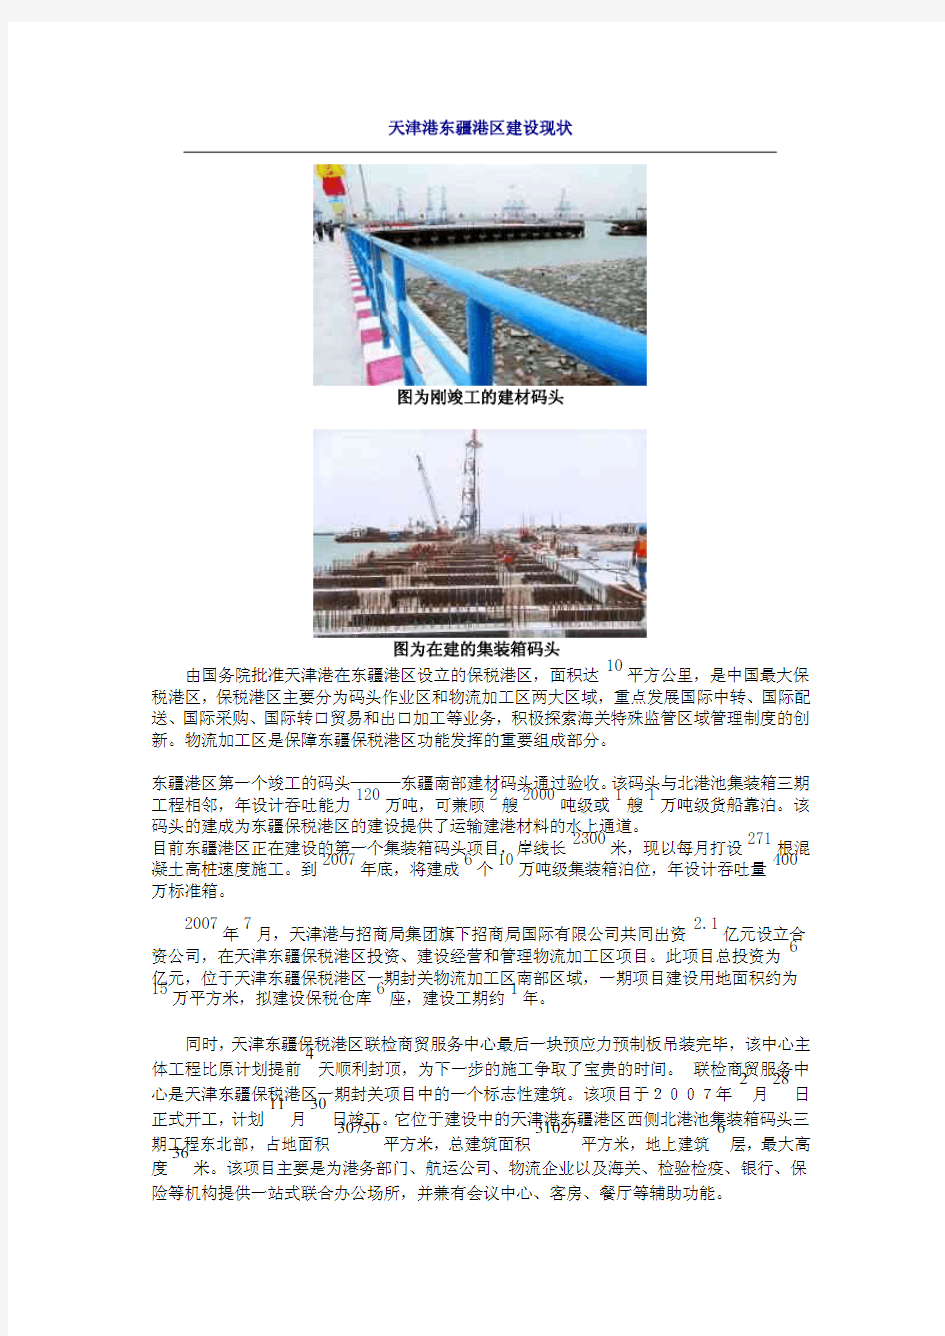 天津港东疆港区建设现状